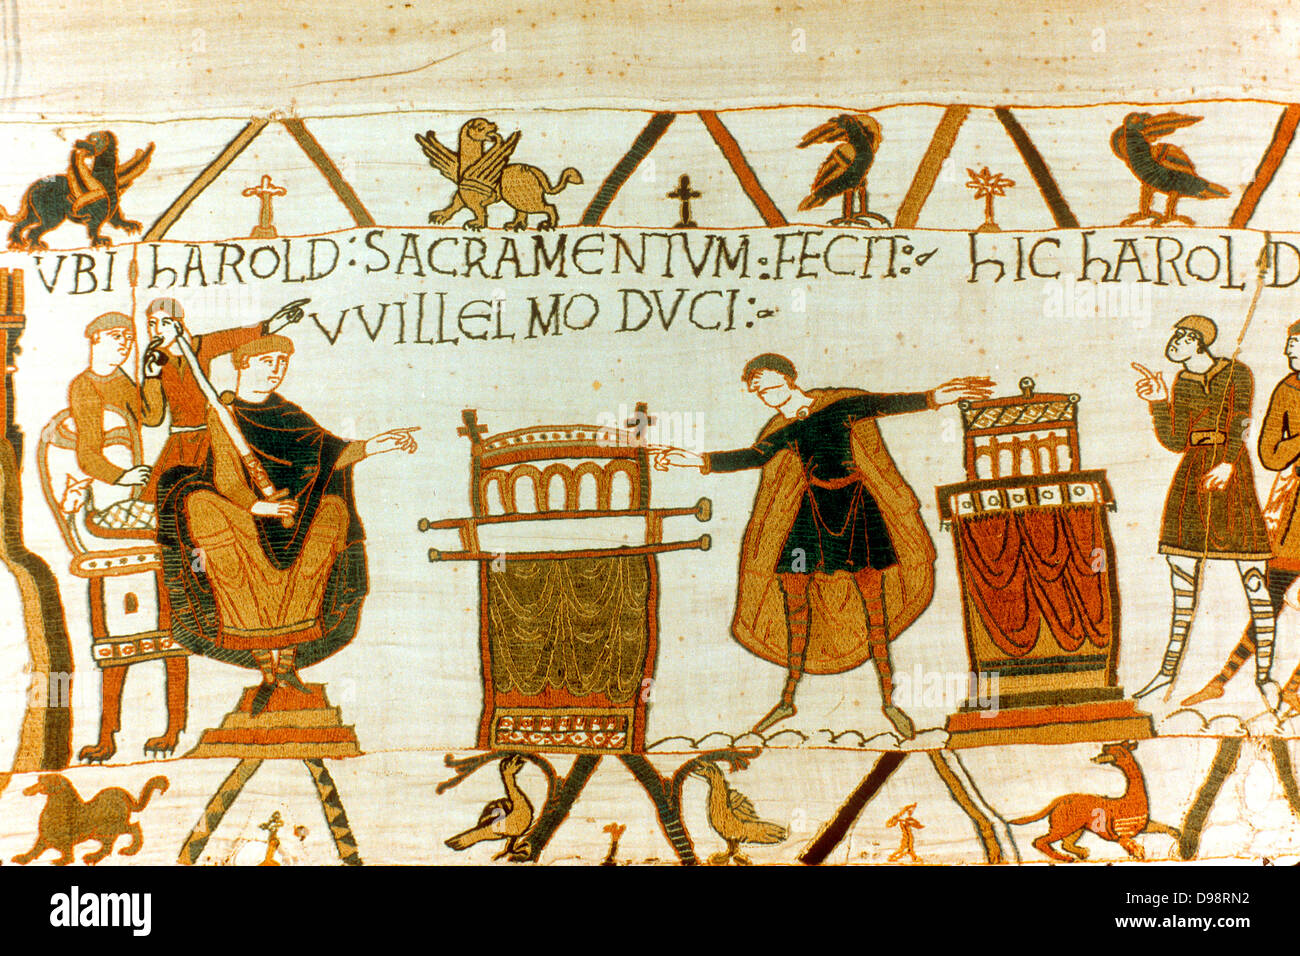 Arazzo di Bayeux 1067: Harold Godwinson conte di Wessex (Harold II) giuramento giuramento di fealty a Guglielmo di Normandia (Guglielmo I il Conquistatore) su sante reliquie, 1064. William utilizzato questo giuramento per incrementare la sua rivendicazione al trono Inglese. Prodotti tessili Foto Stock